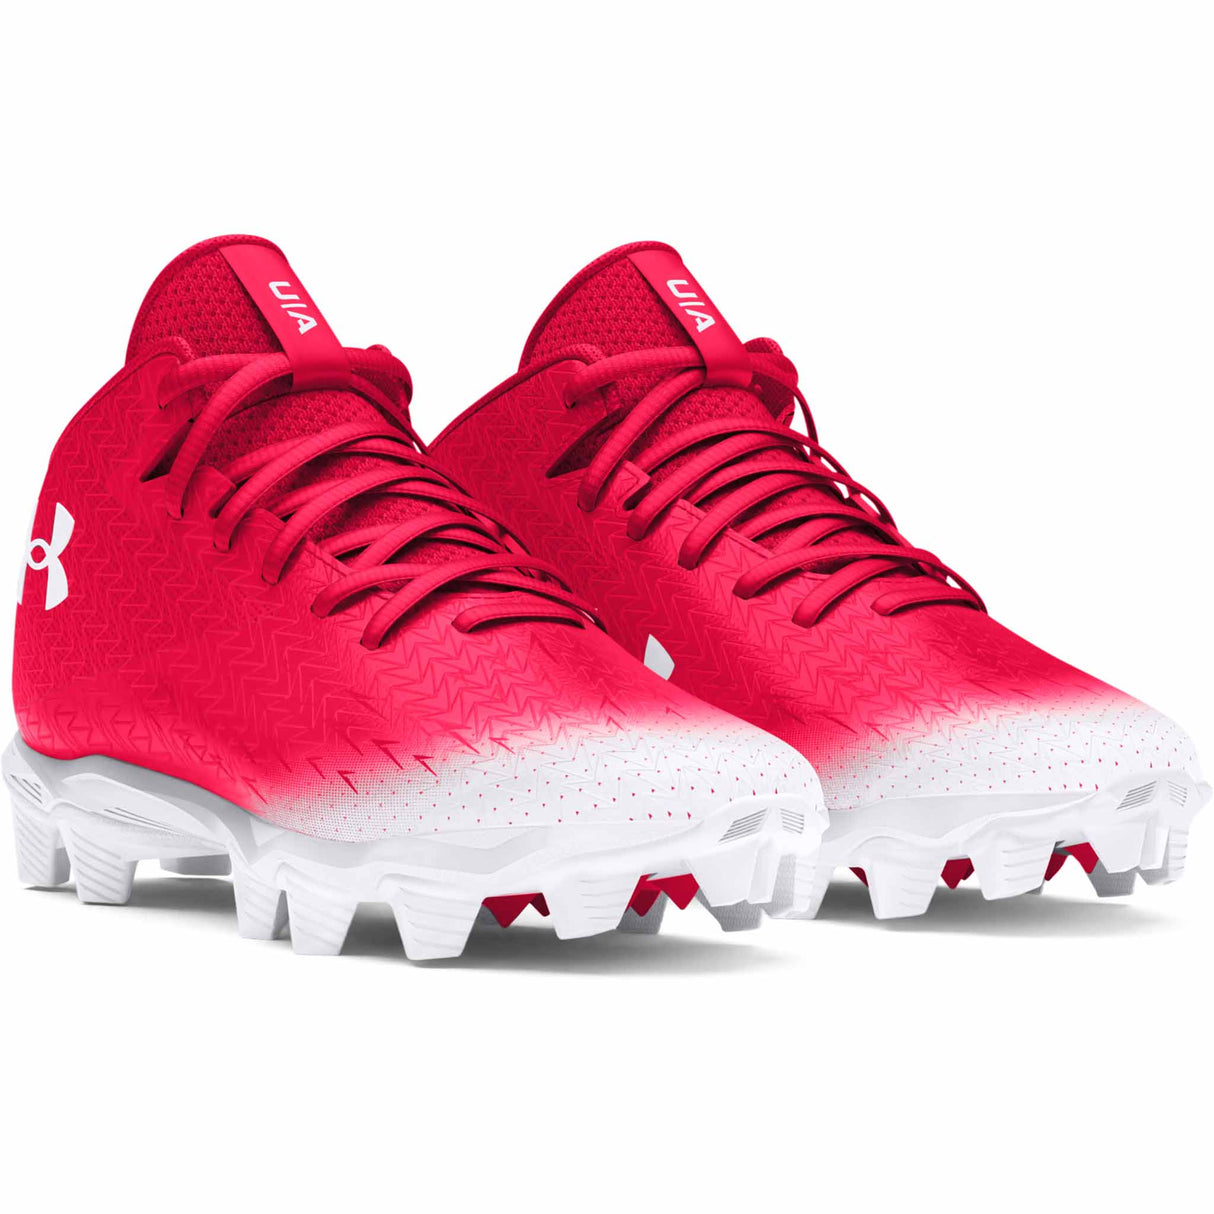 Under Armour Spotlight Franchise 4.0 RM JR chaussures de football enfant paire - blanc / rouge